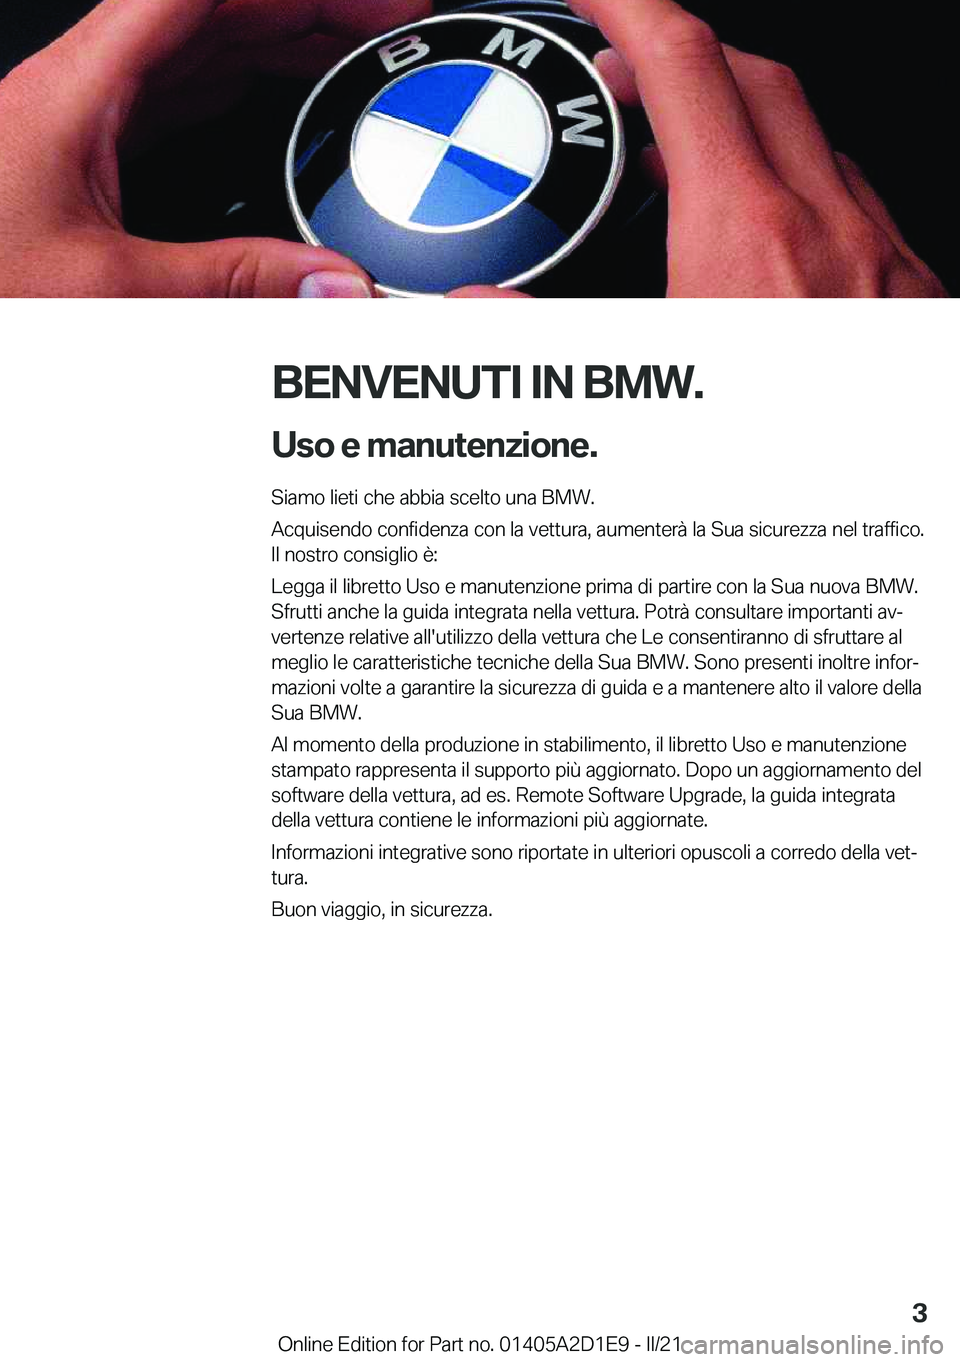 BMW X6 M 2021  Libretti Di Uso E manutenzione (in Italian) �B�E�N�V�E�N�U�T�I��I�N��B�M�W�.�U�s�o��e��m�a�n�u�t�e�n�z�i�o�n�e�.
�S�i�a�m�o��l�i�e�t�i��c�h�e��a�b�b�i�a��s�c�e�l�t�o��u�n�a��B�M�W�.
�A�c�q�u�i�s�e�n�d�o��c�o�n�f�i�d�e�n�z�a��c�o�n�